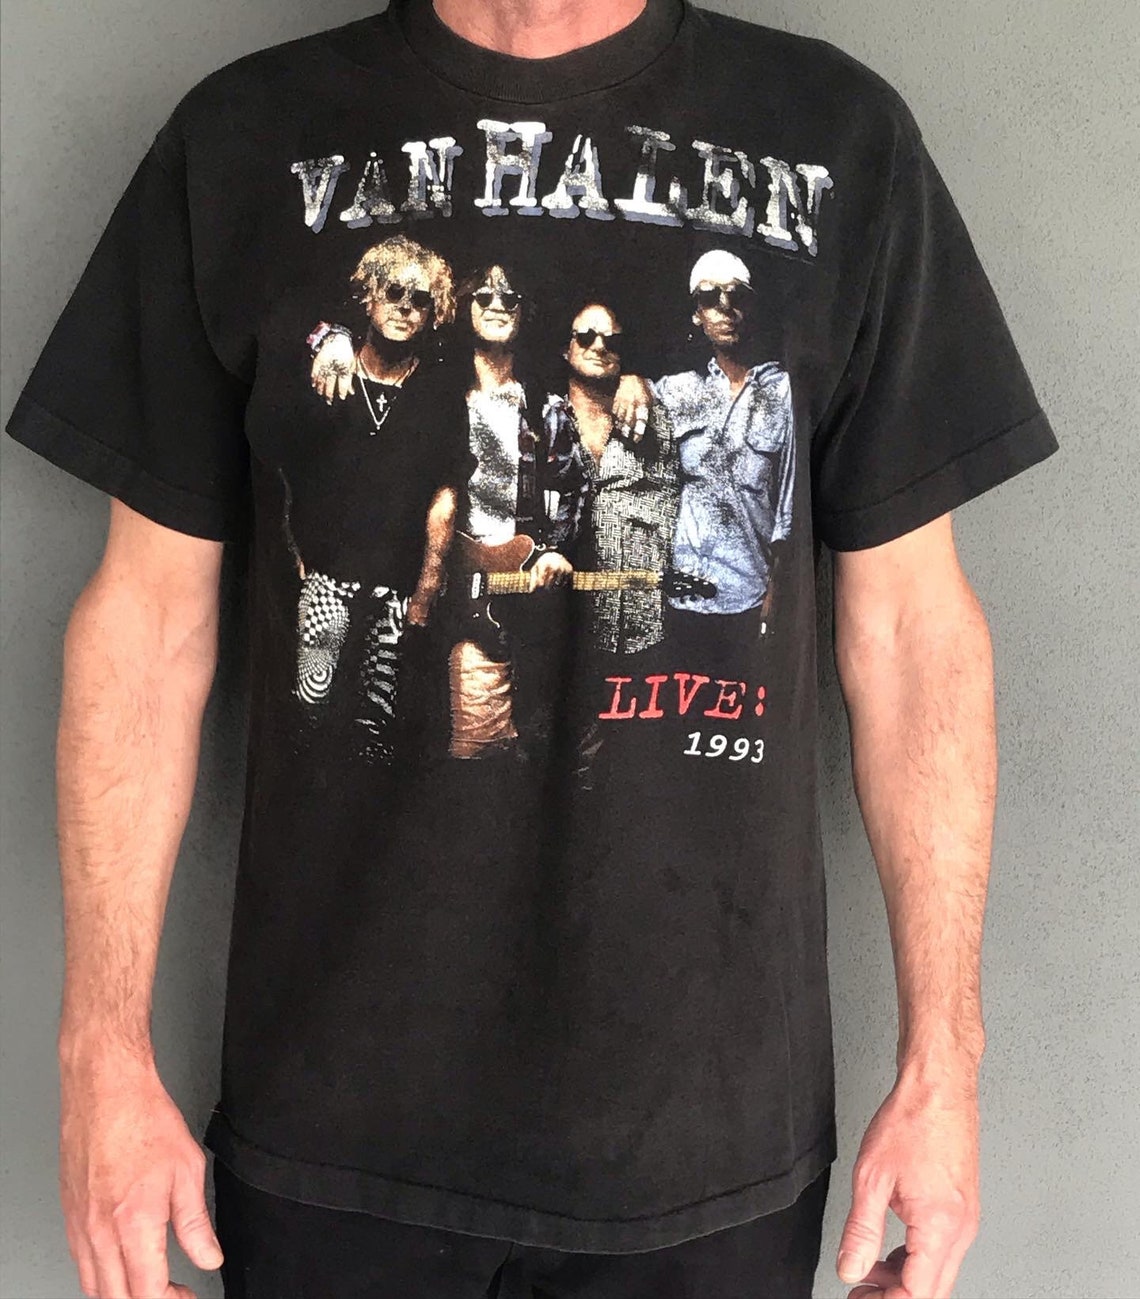 Vintage 1993 Van Halen Tour Shirt Size Large - Etsy